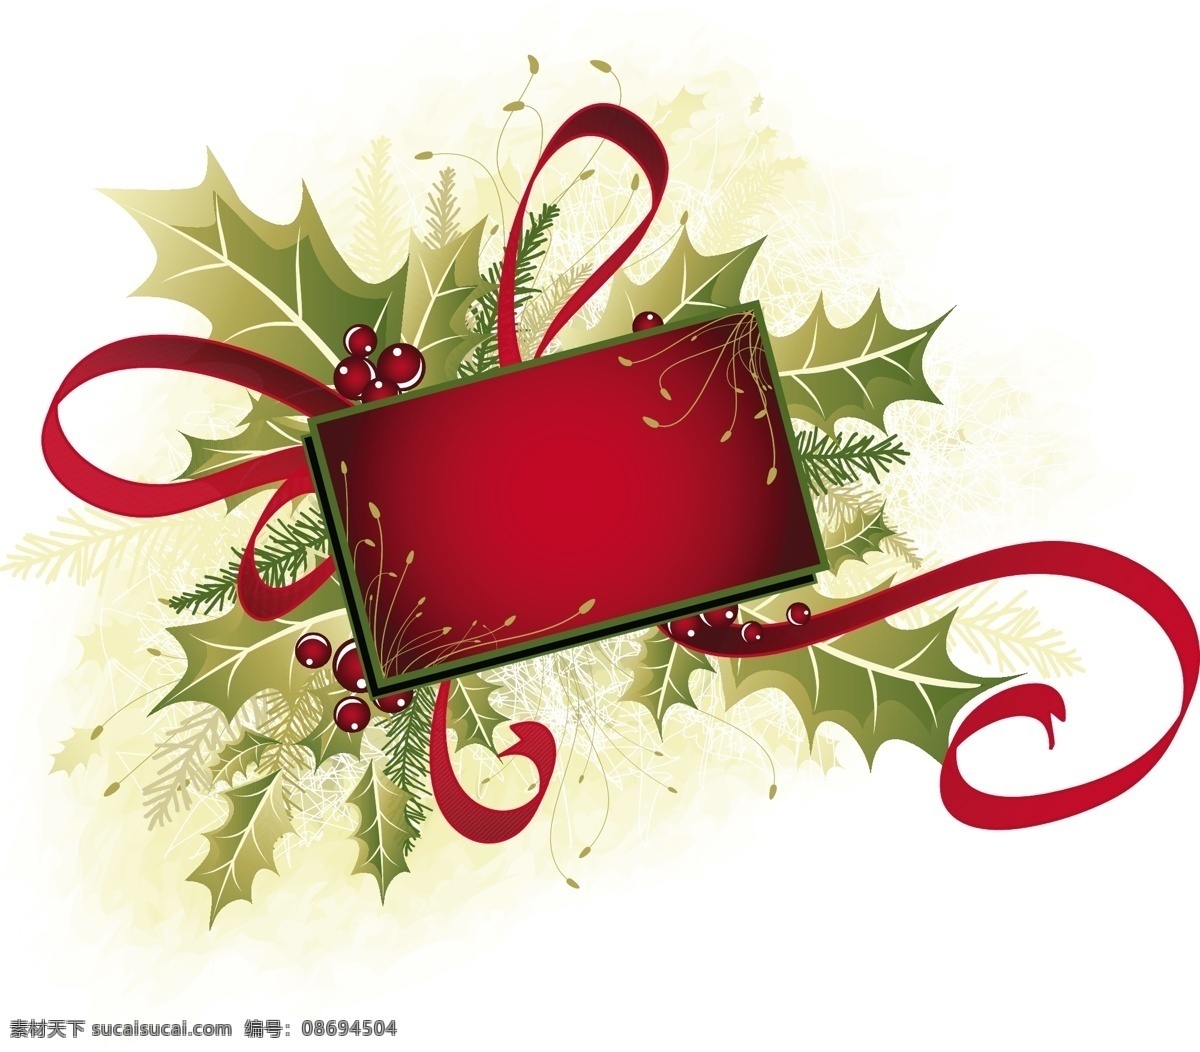 圣诞 矢量 花边 大全 蝴蝶结 飘带 圣诞树装饰 丝带 韩国 圣诞节 装饰 图案 节日素材